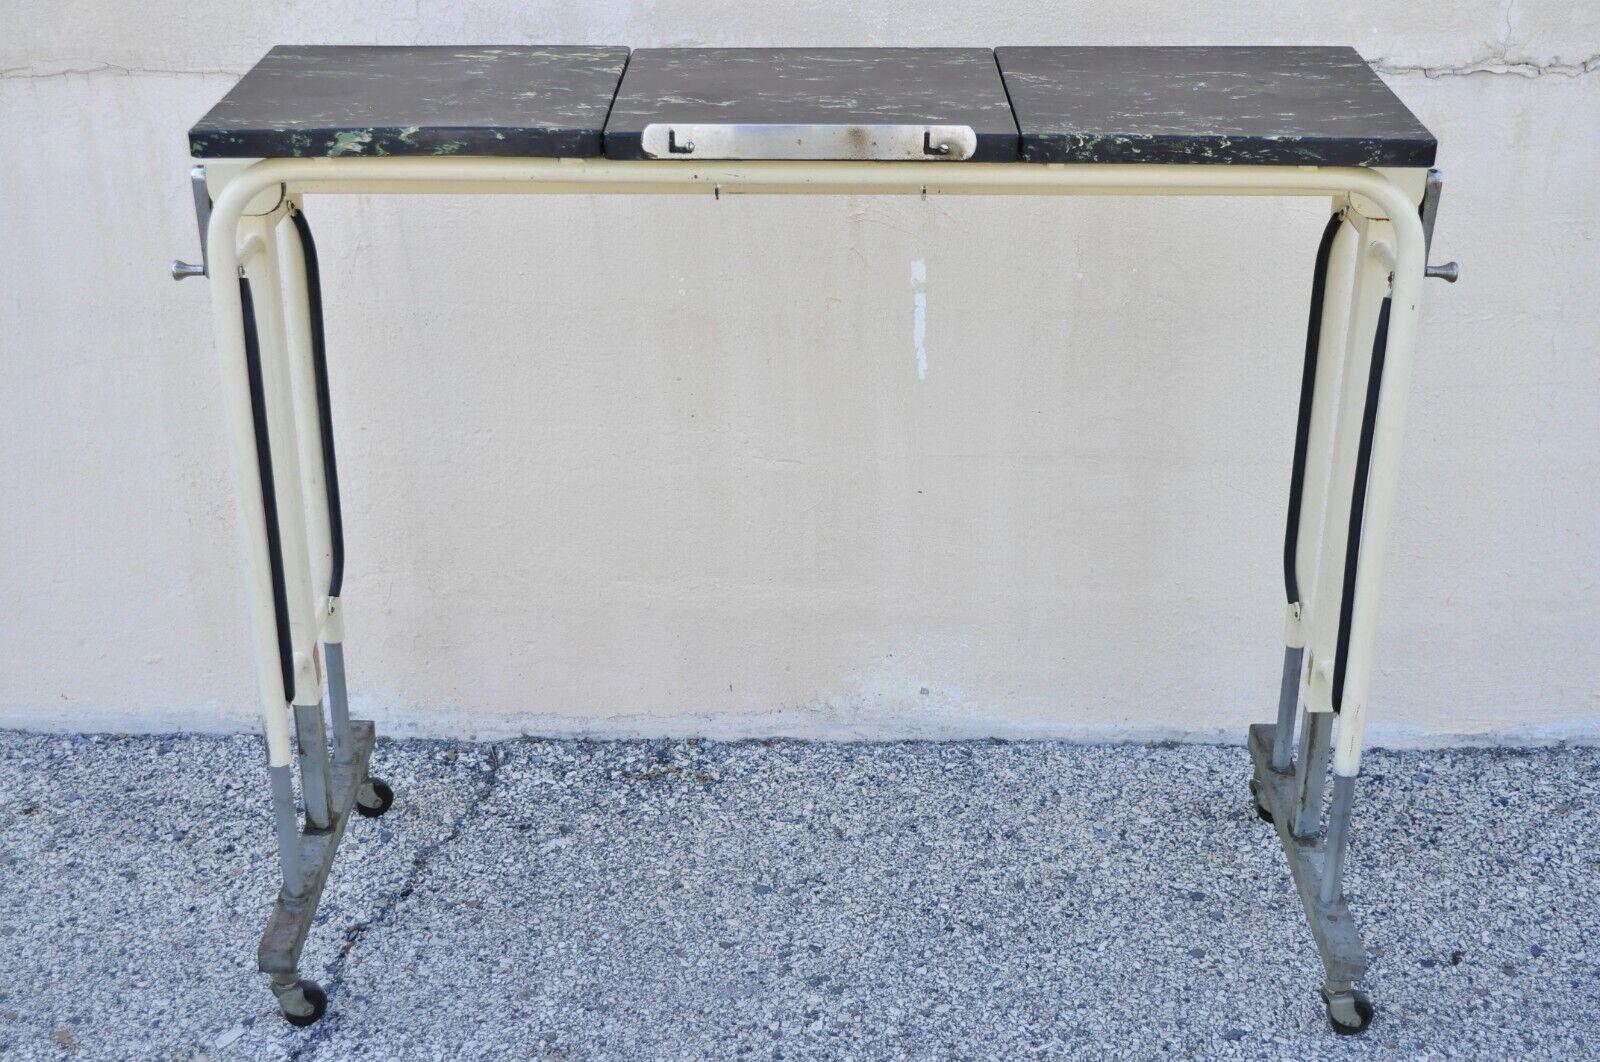 Vintage Doehler Metal Furniture Co verstellbarer medizinisch zahnärztlicher Zeichentisch. Der Artikel verfügt über Rollen, eine verstellbare Höhe mit drehbaren Rädern, einen aufklappbaren Schreibständer mit verschiedenen Höheneinstellungen, einen